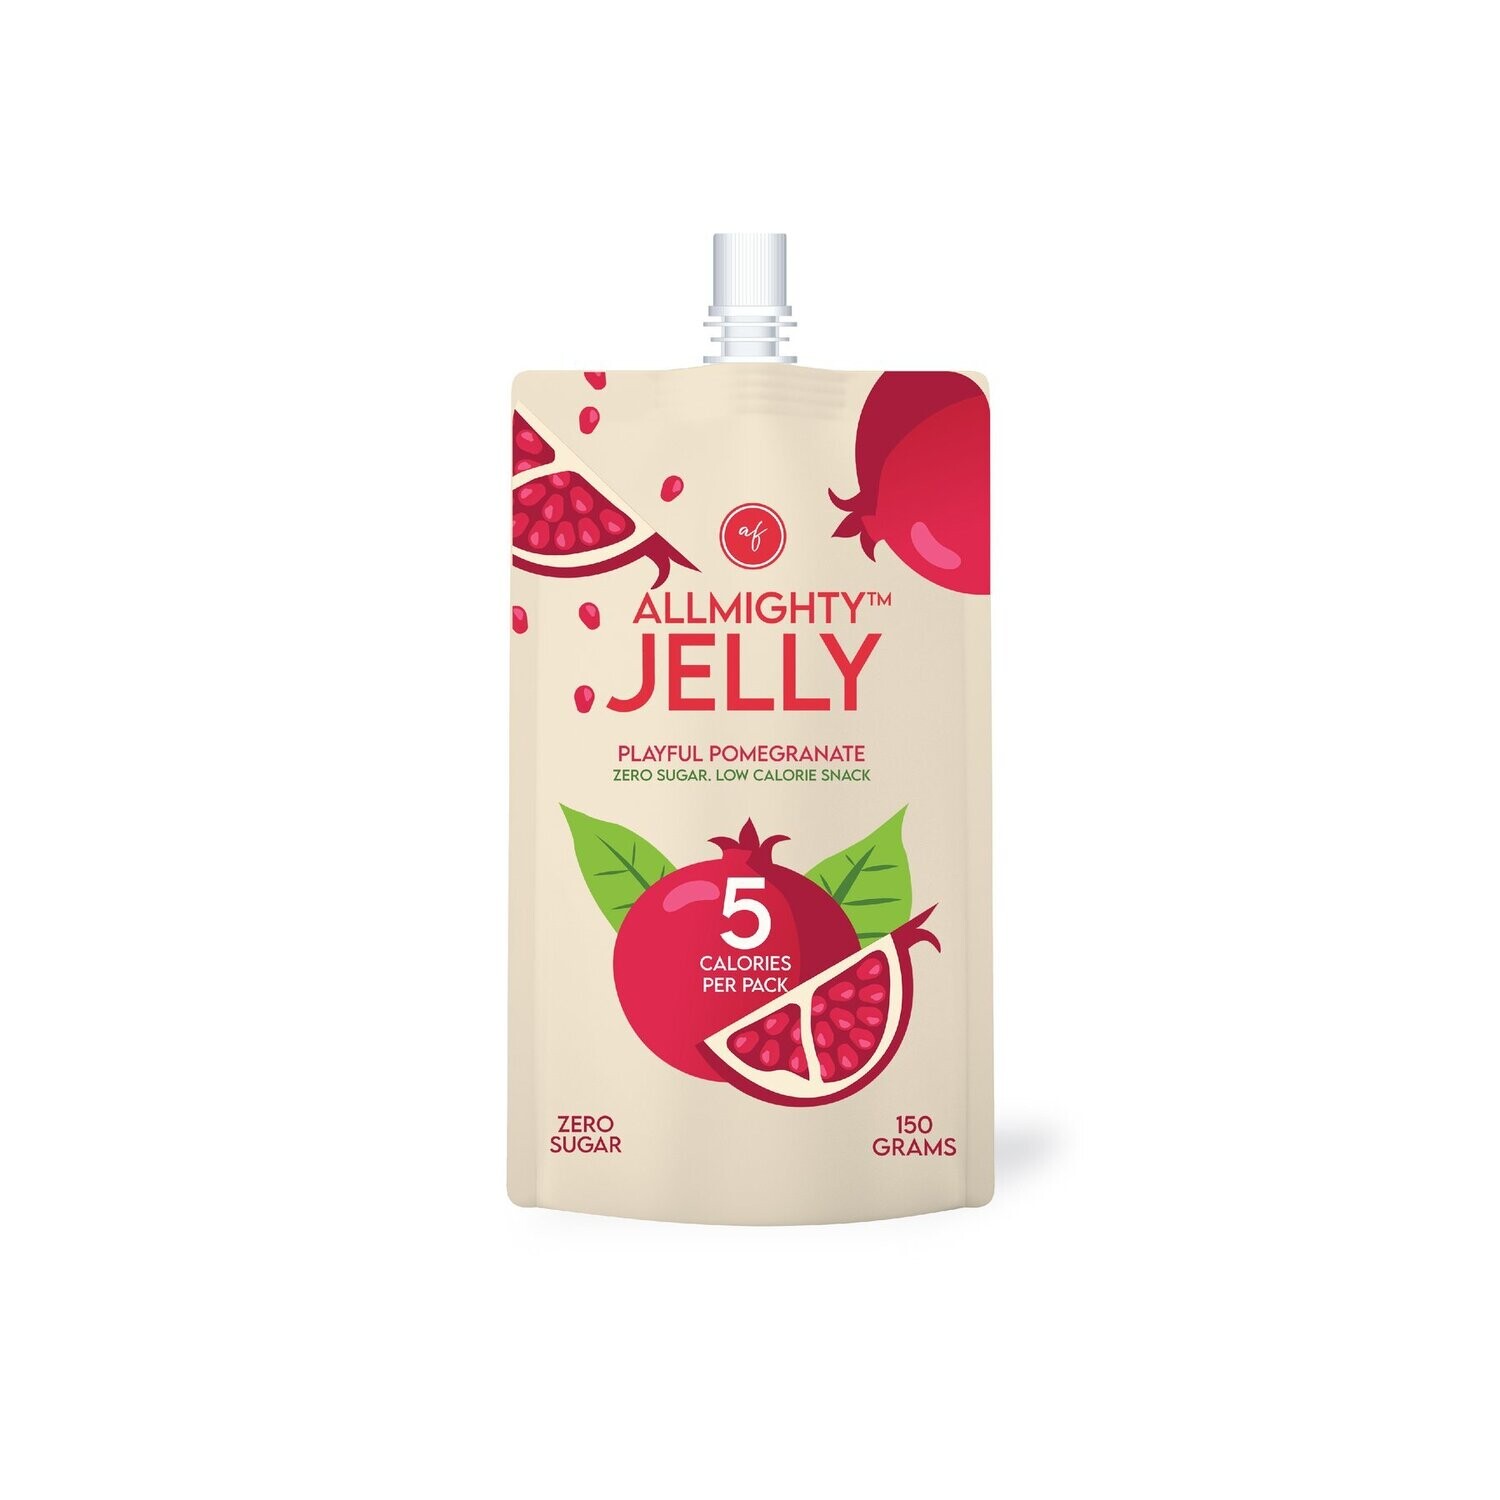 Keto Allmighty Konjac Jelly - Playful Pomegranate